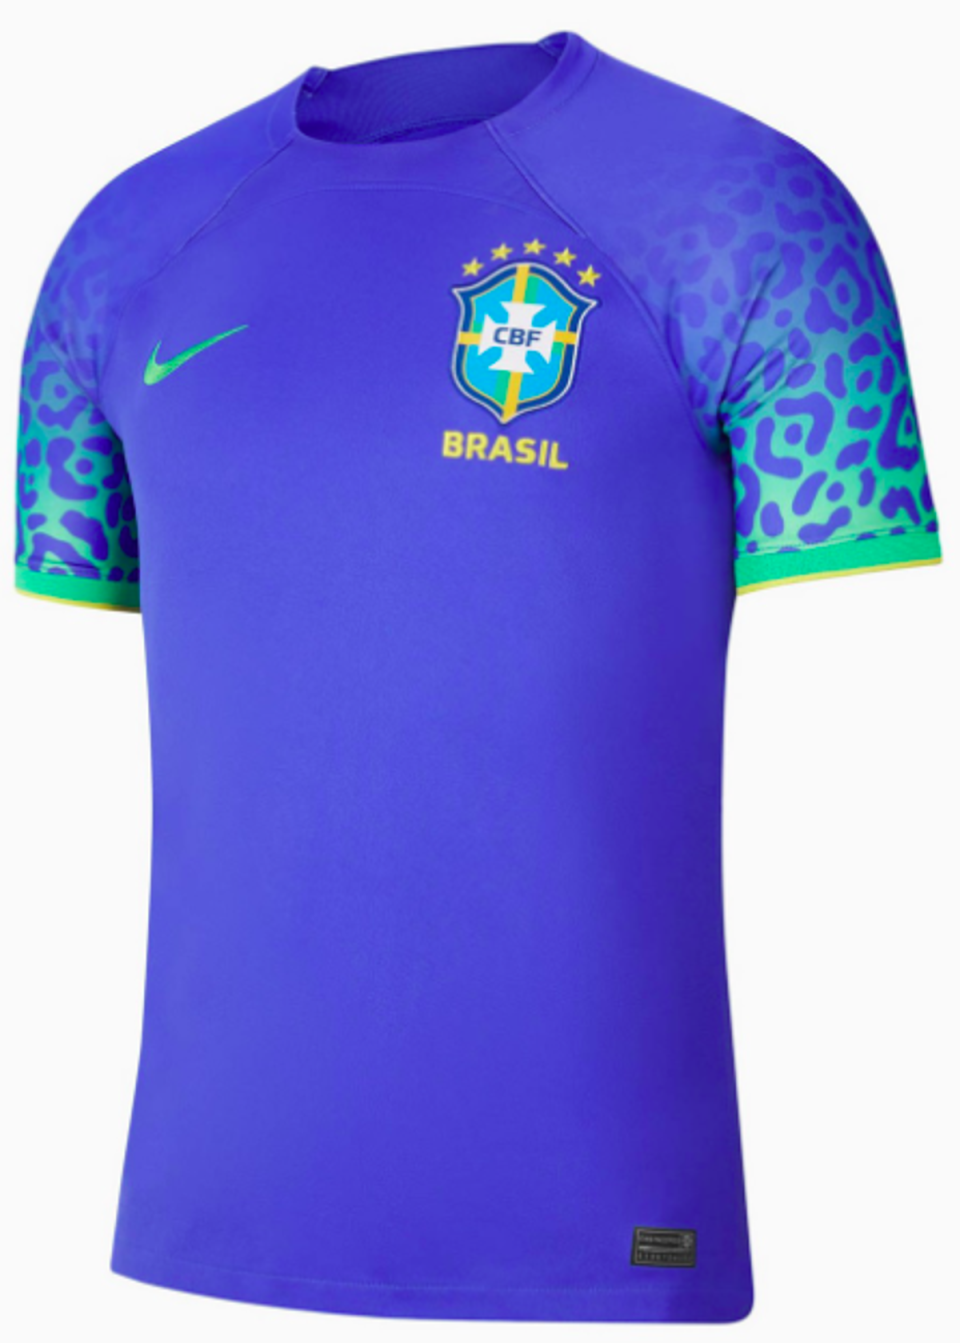 Brazil away (Nike)